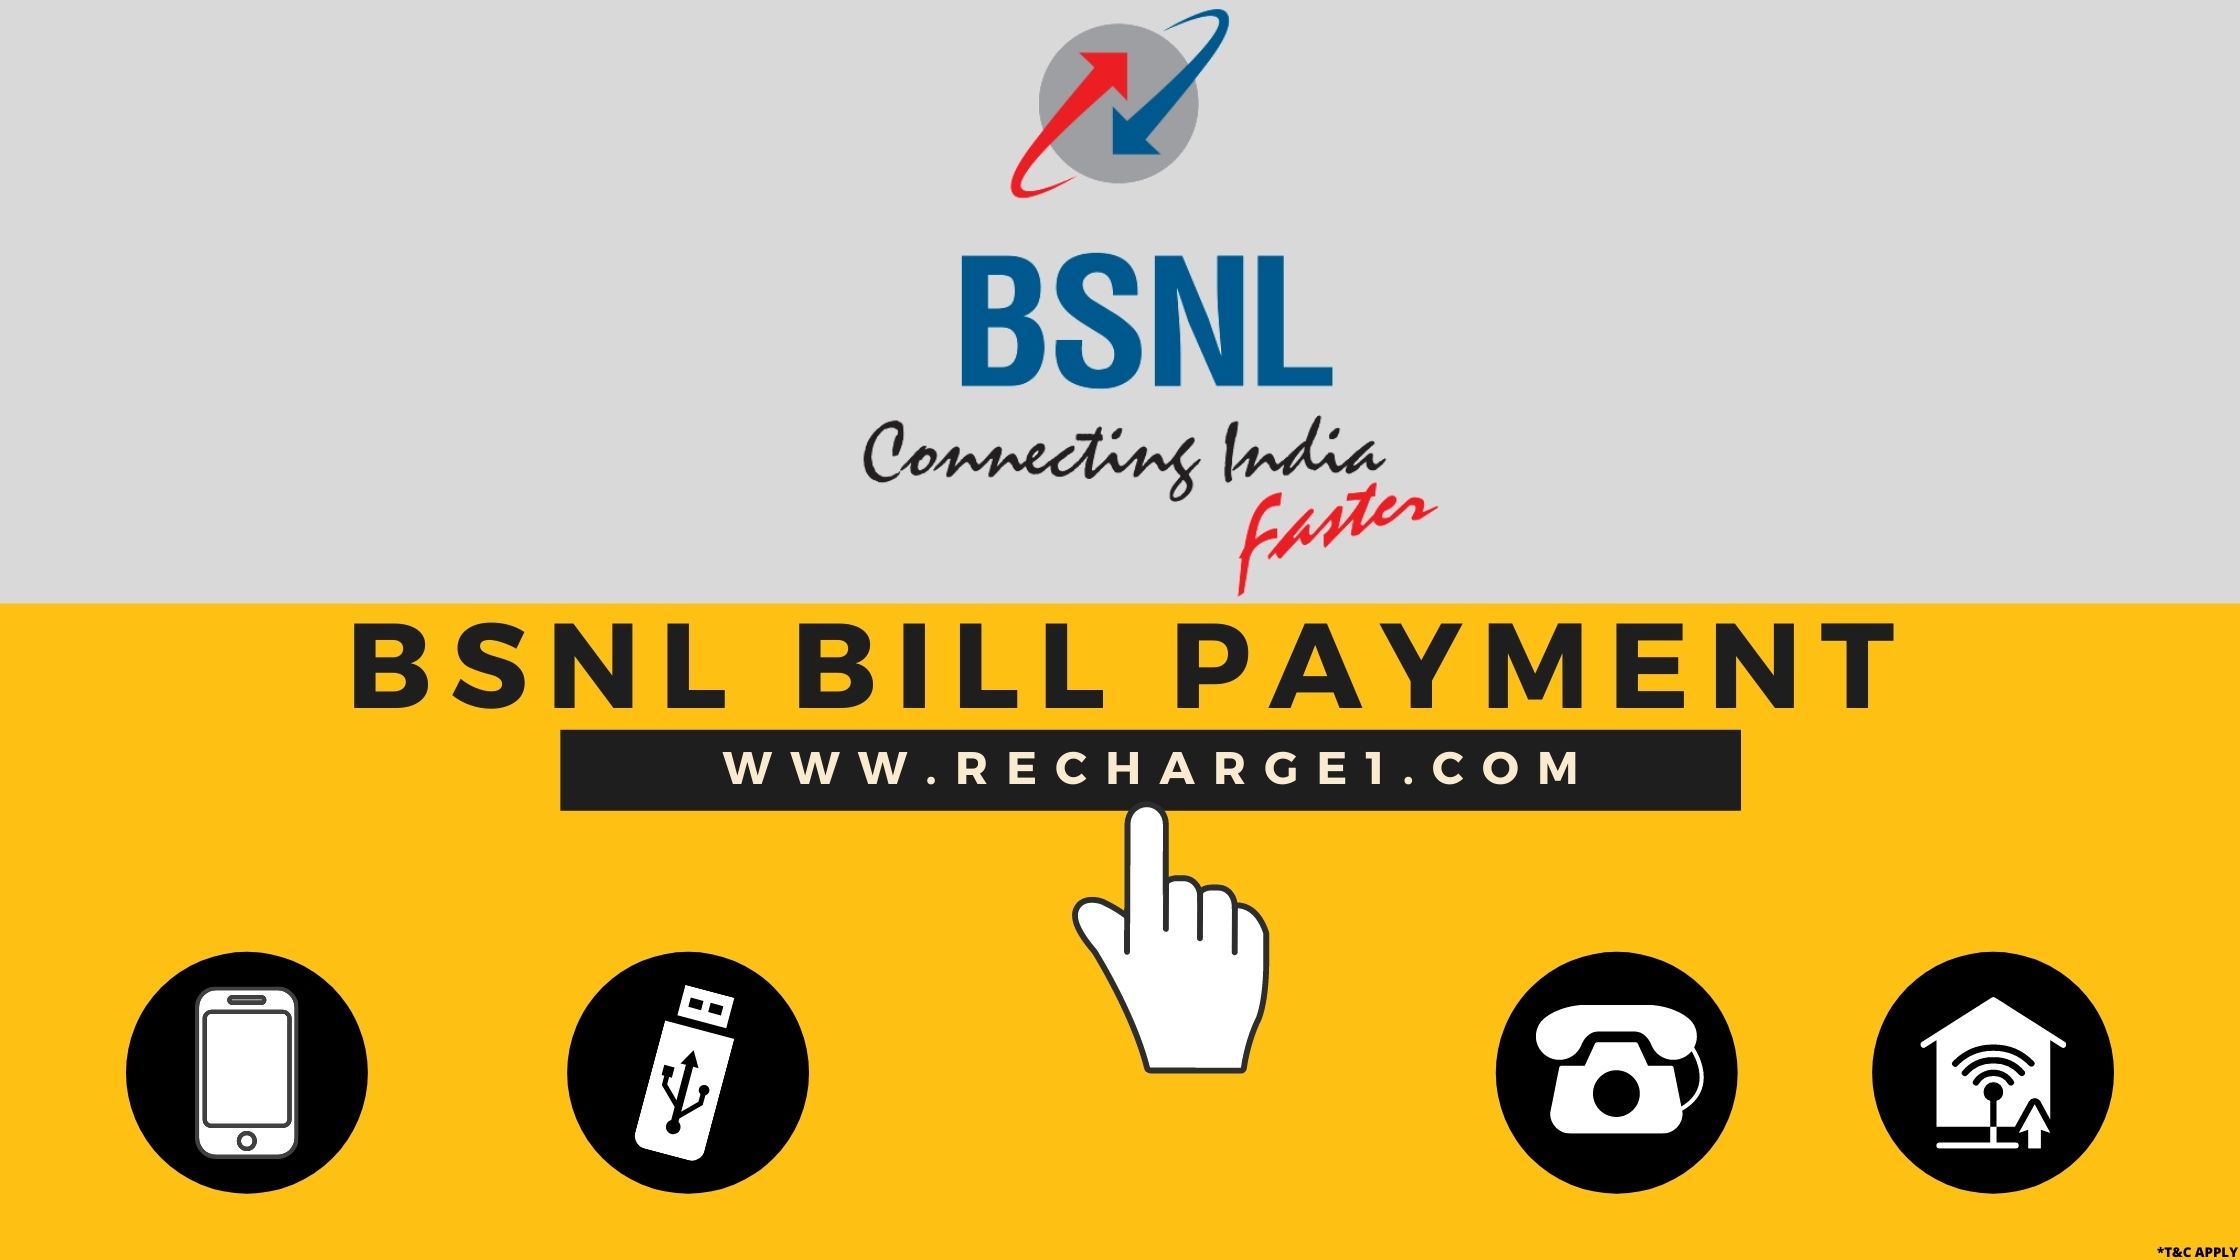  BSNL Bill Payment – Get 100% Cashback/Cash Rewards on Successful Bill Payment